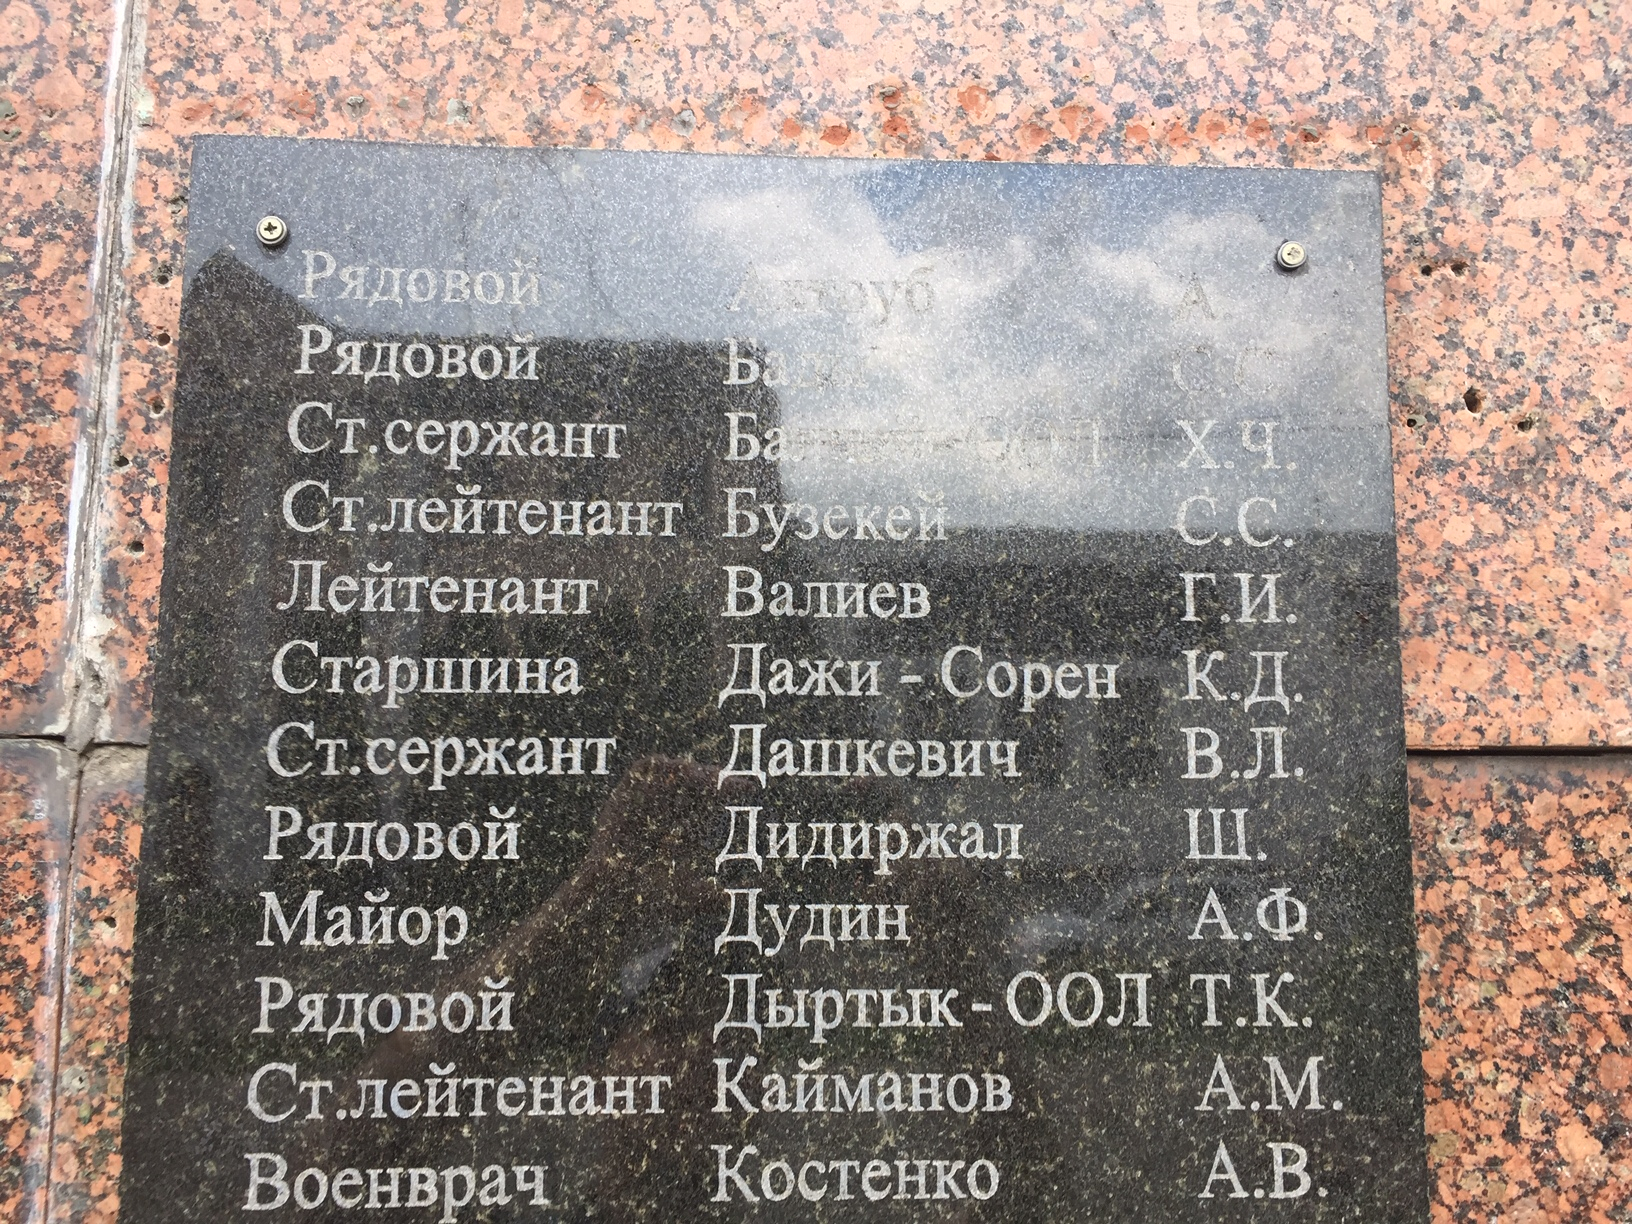 Братская могила тувинцев на ул. Замковой в г. Дубно